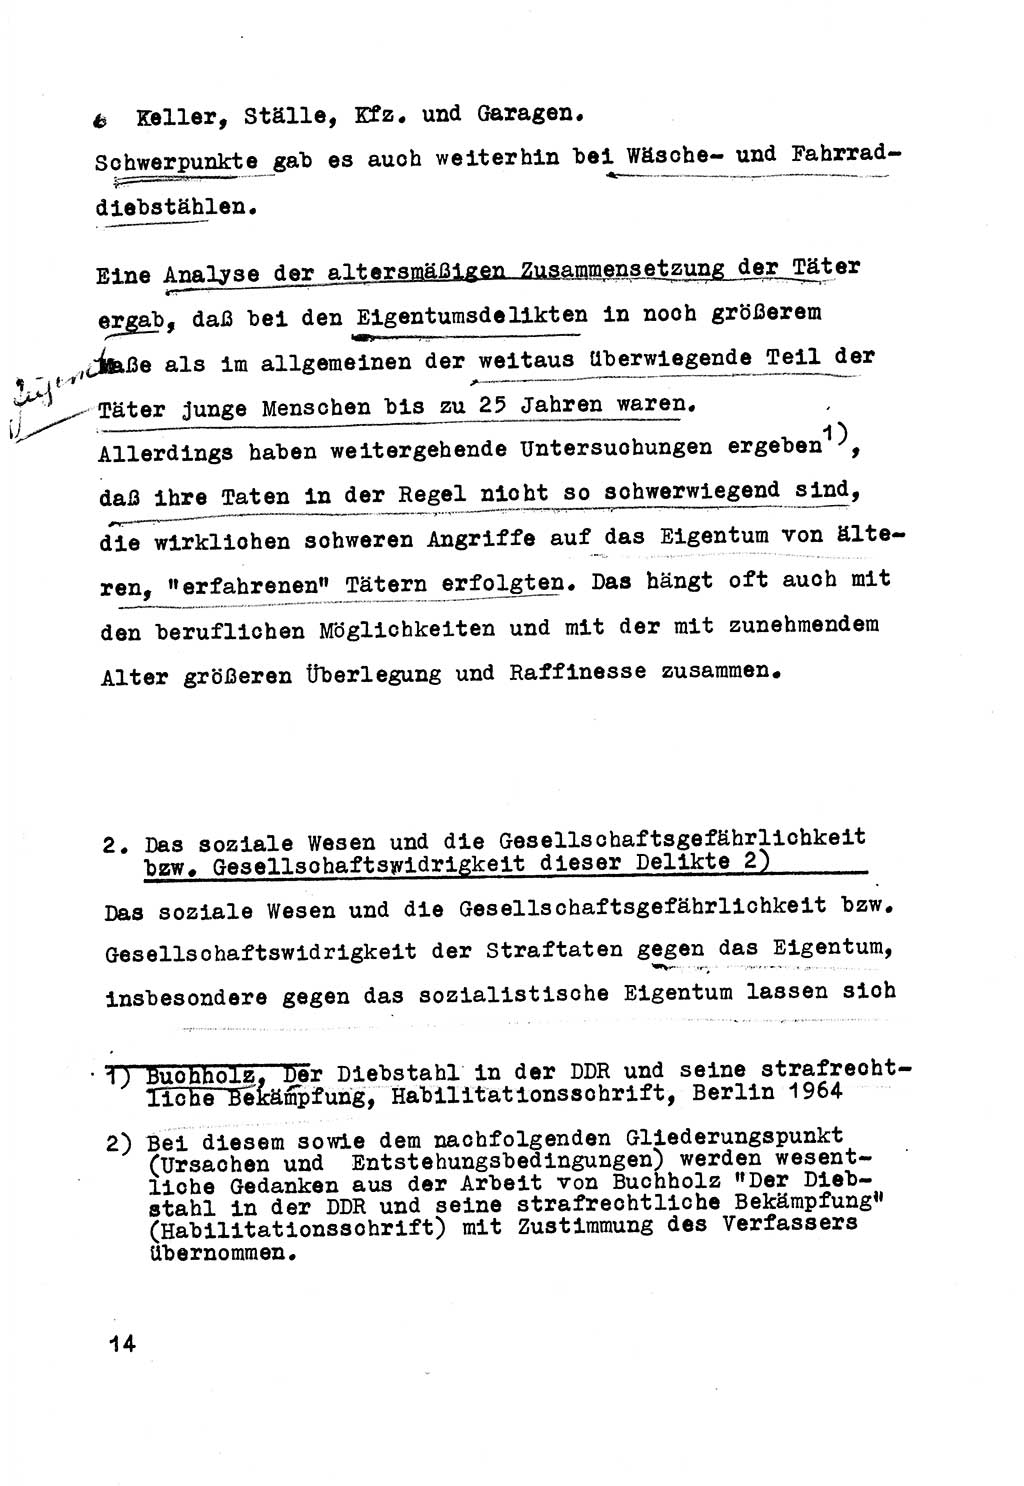 Strafrecht der DDR (Deutsche Demokratische Republik), Besonderer Teil, Lehrmaterial, Heft 5 1970, Seite 14 (Strafr. DDR BT Lehrmat. H. 5 1970, S. 14)